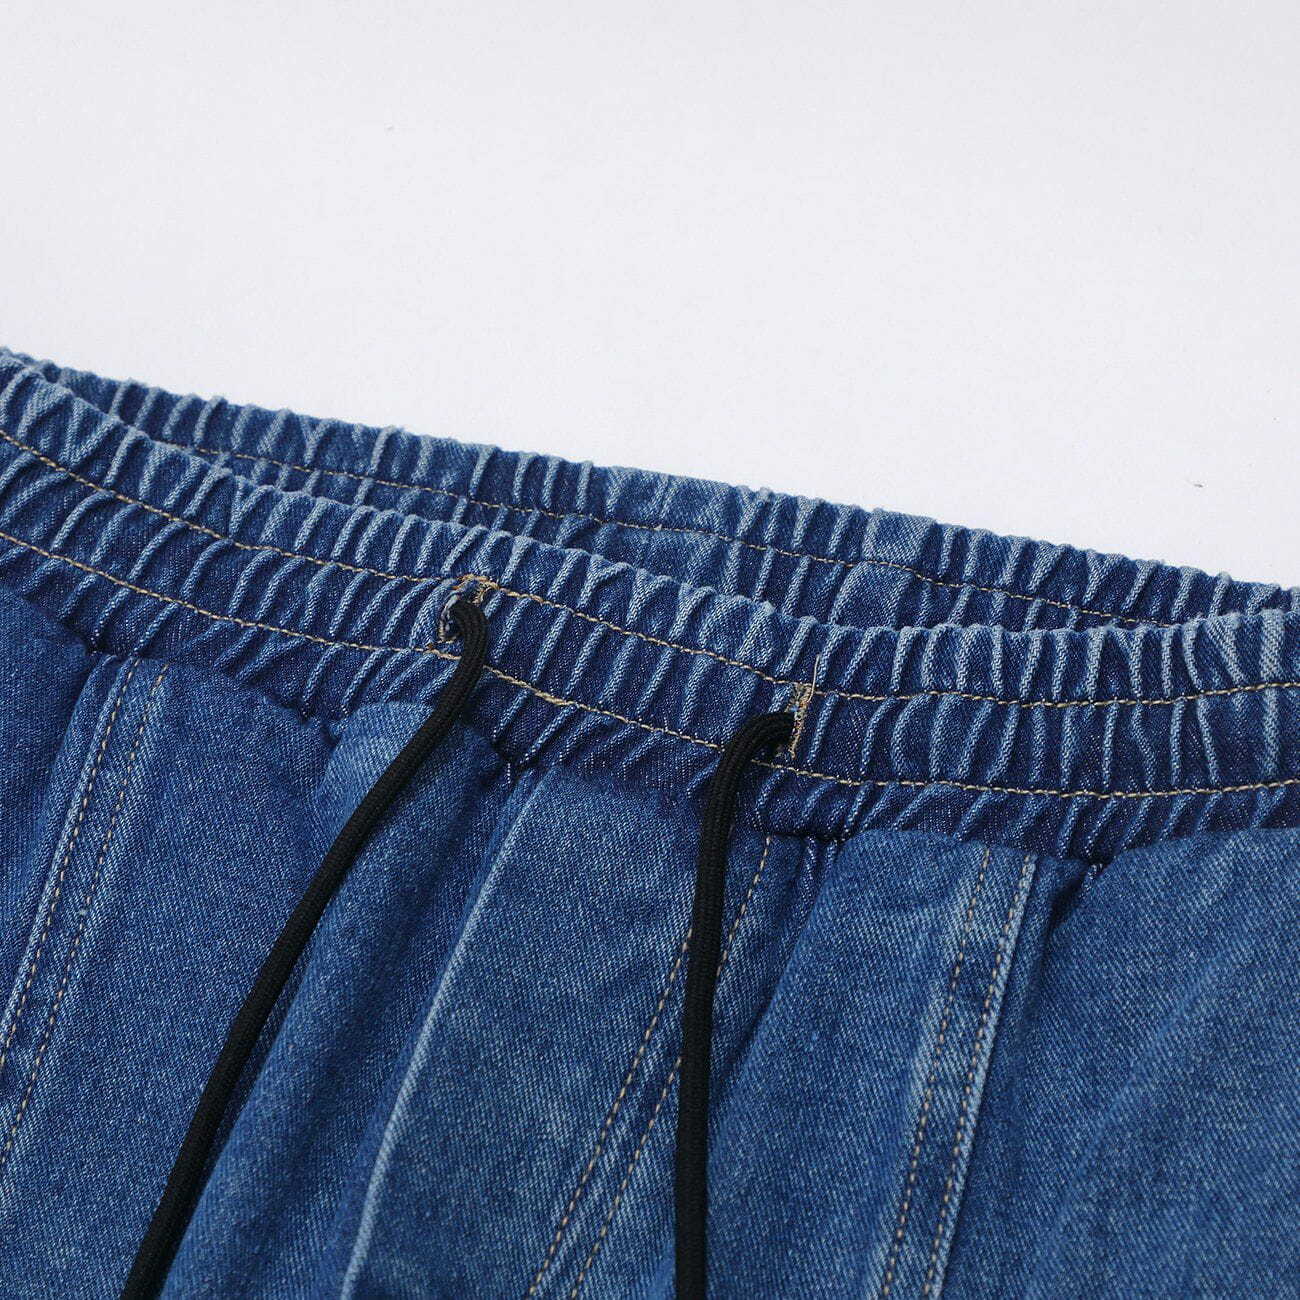 vintage buckle slit jeans edgy streetwear essential 7262